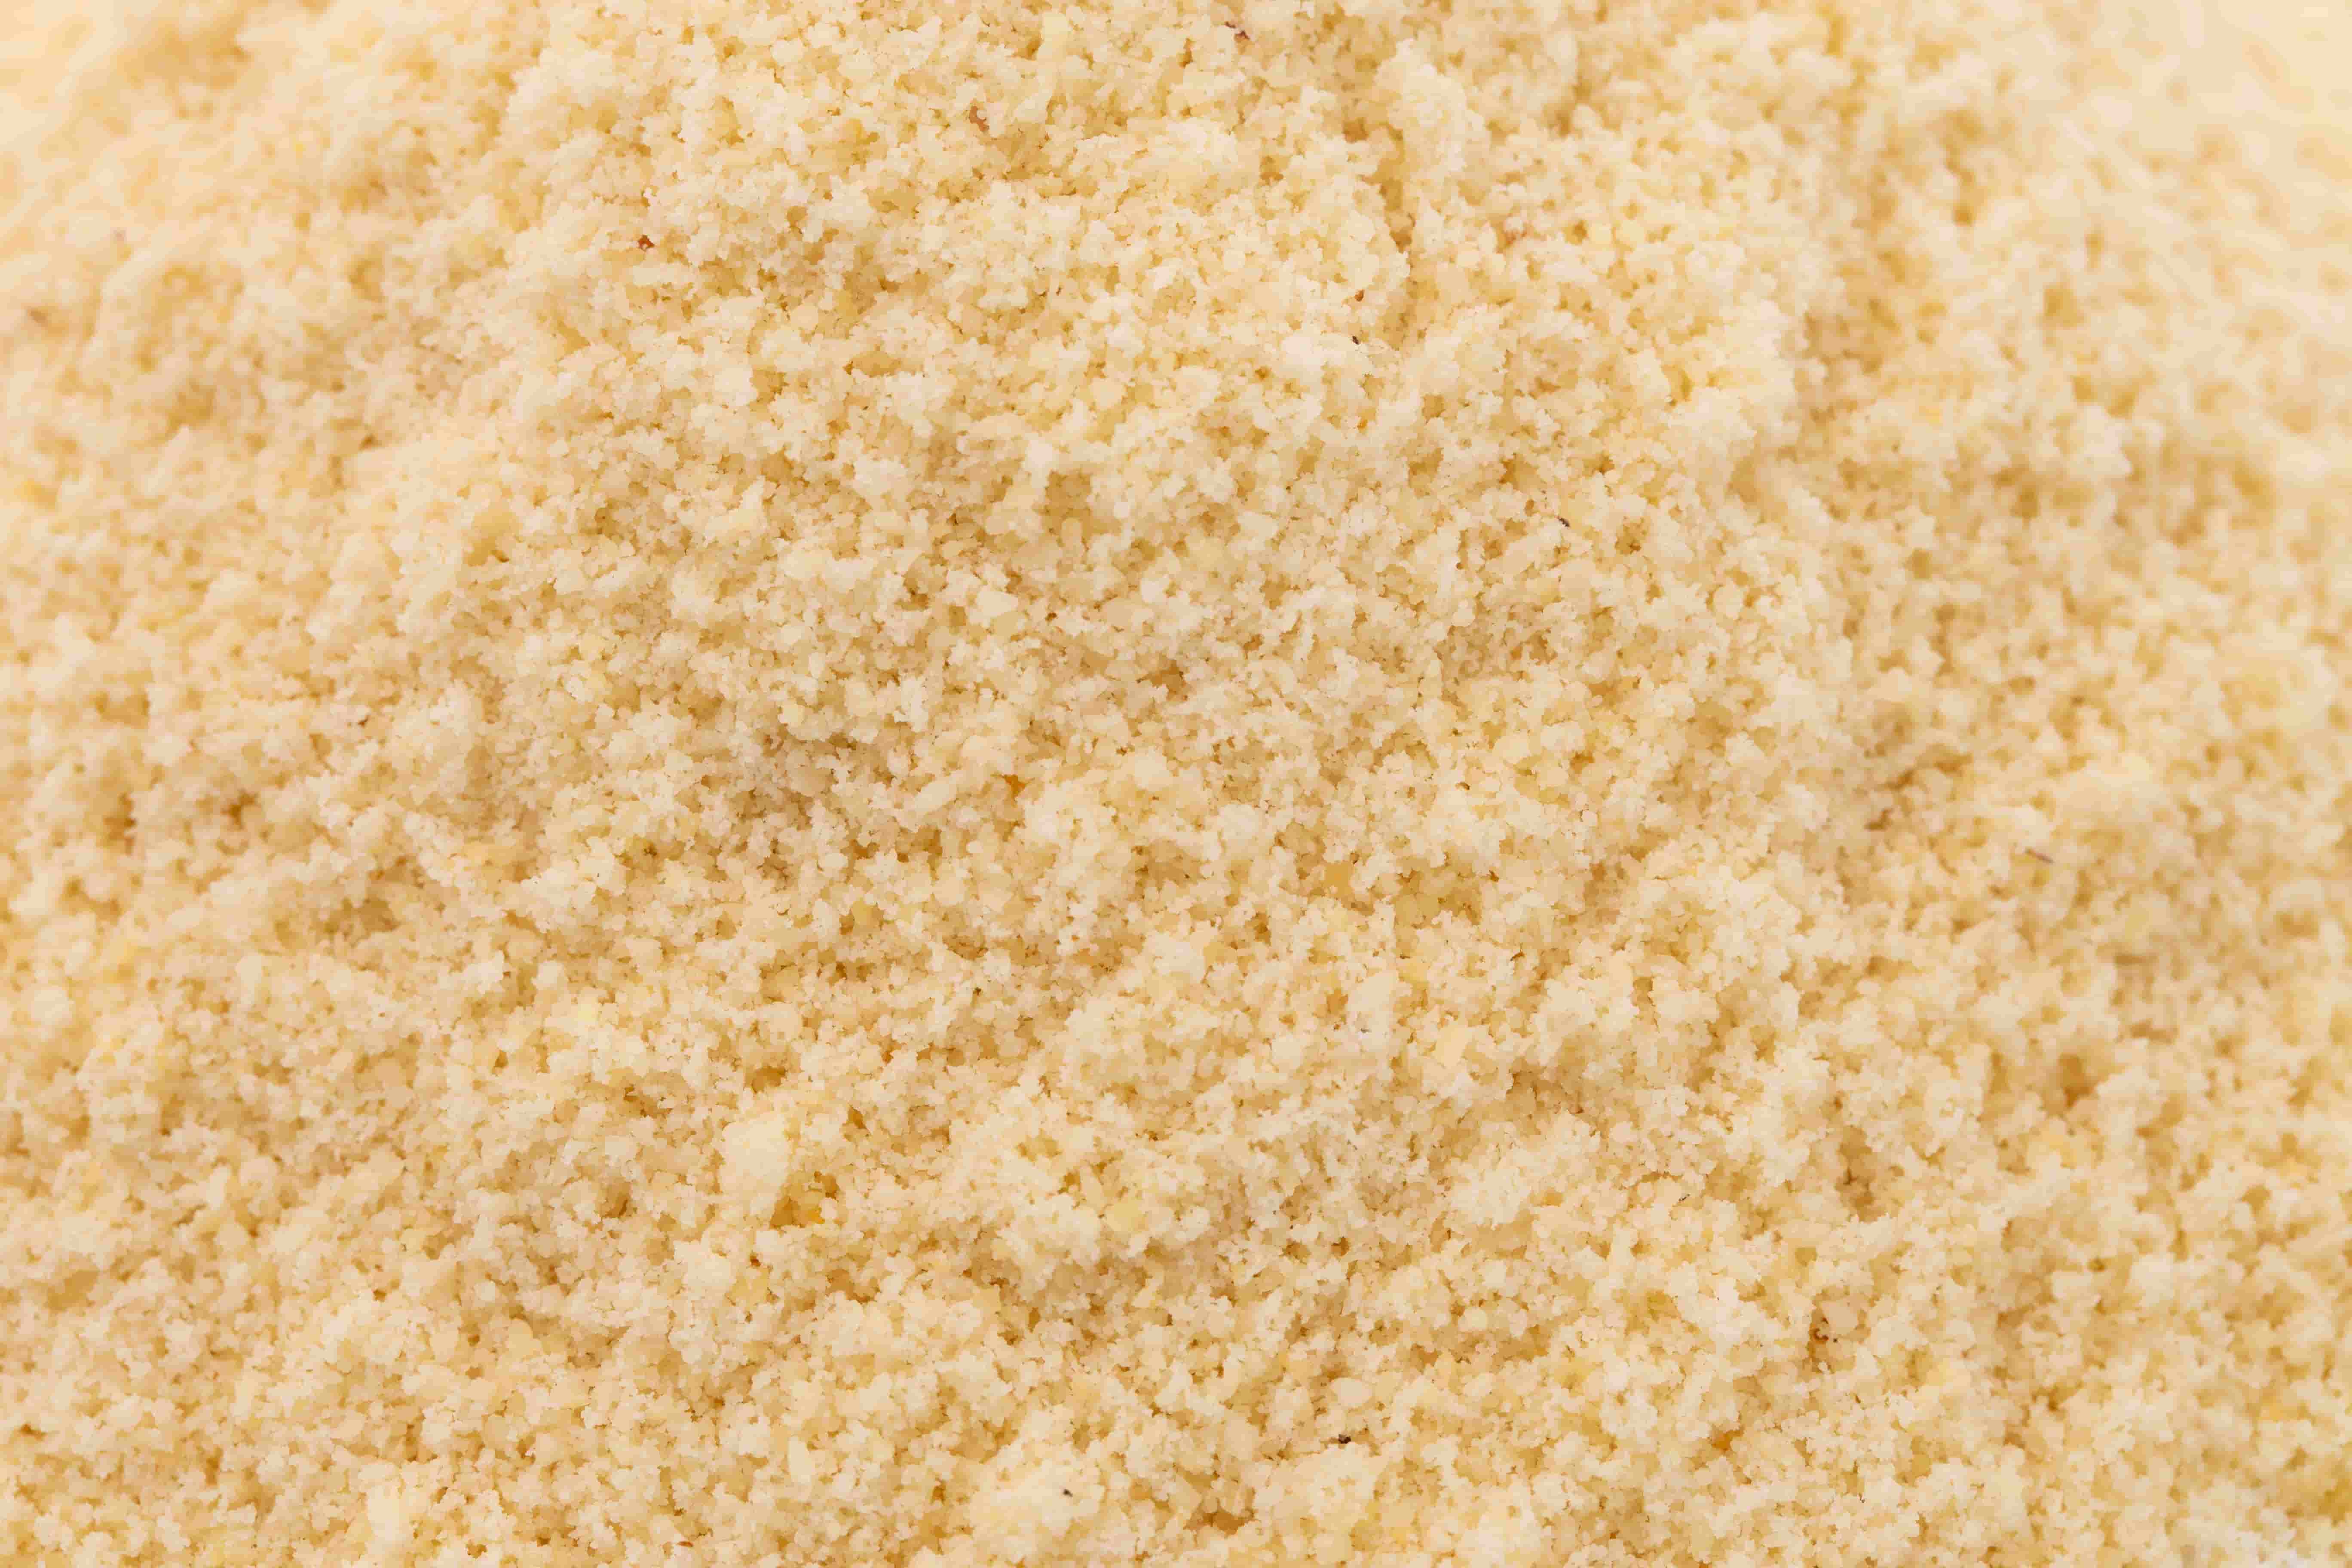 almond flour